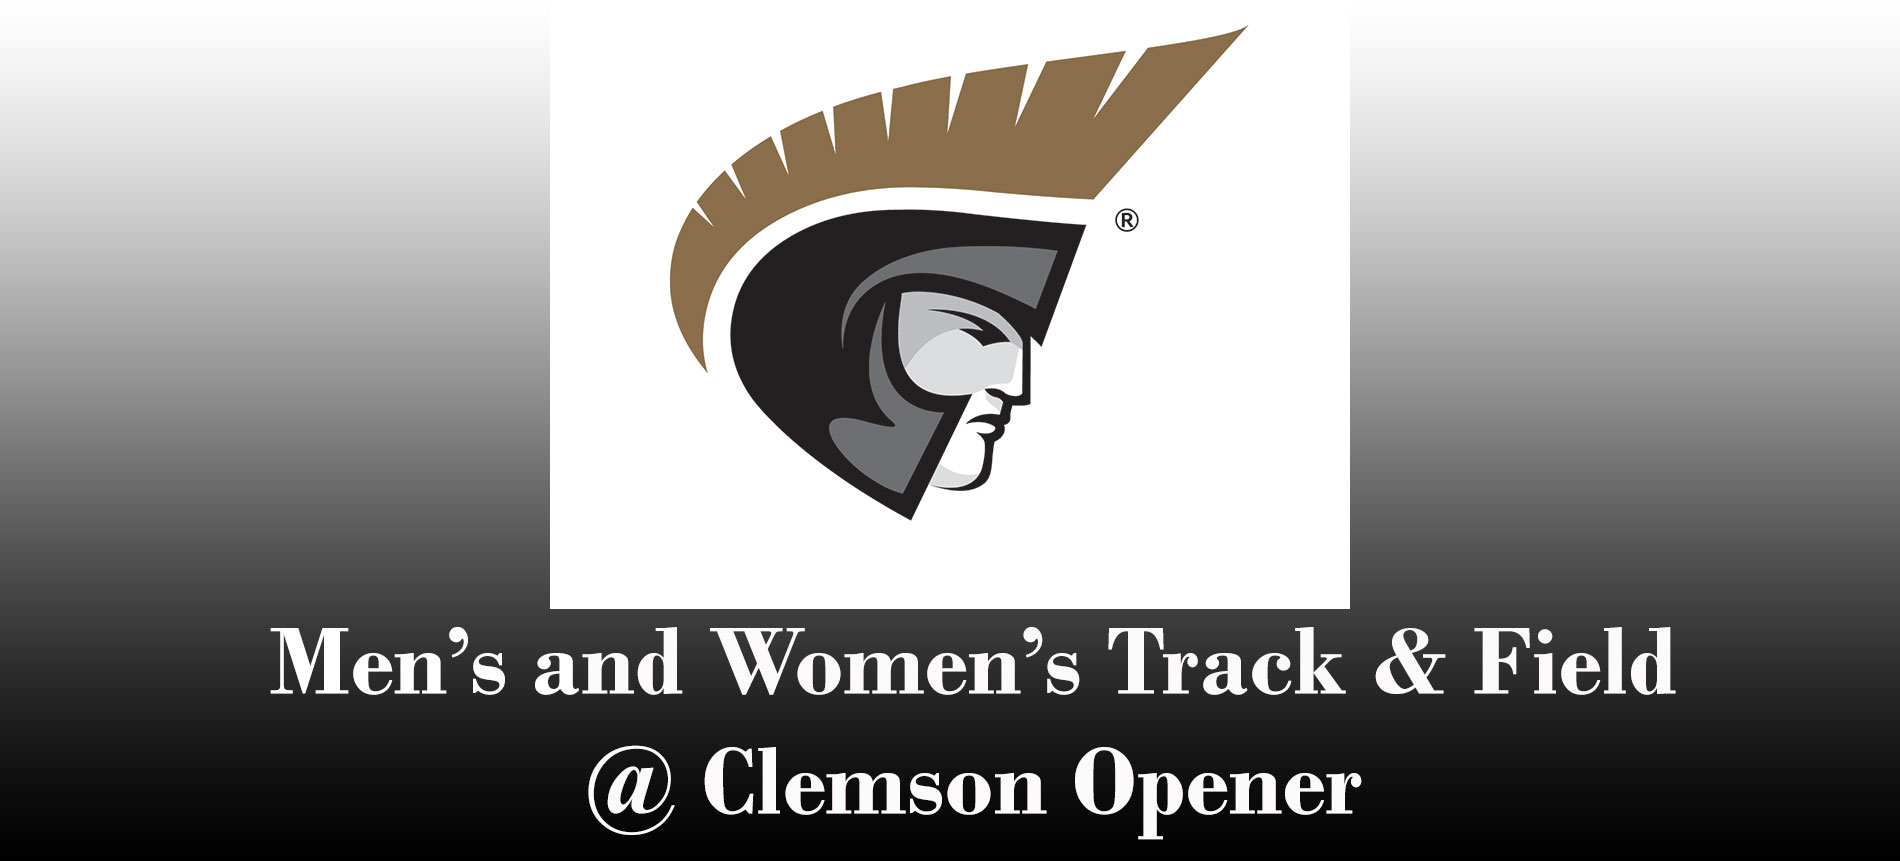 Trojans Open Indoor Track and Field Season at Clemson Opener